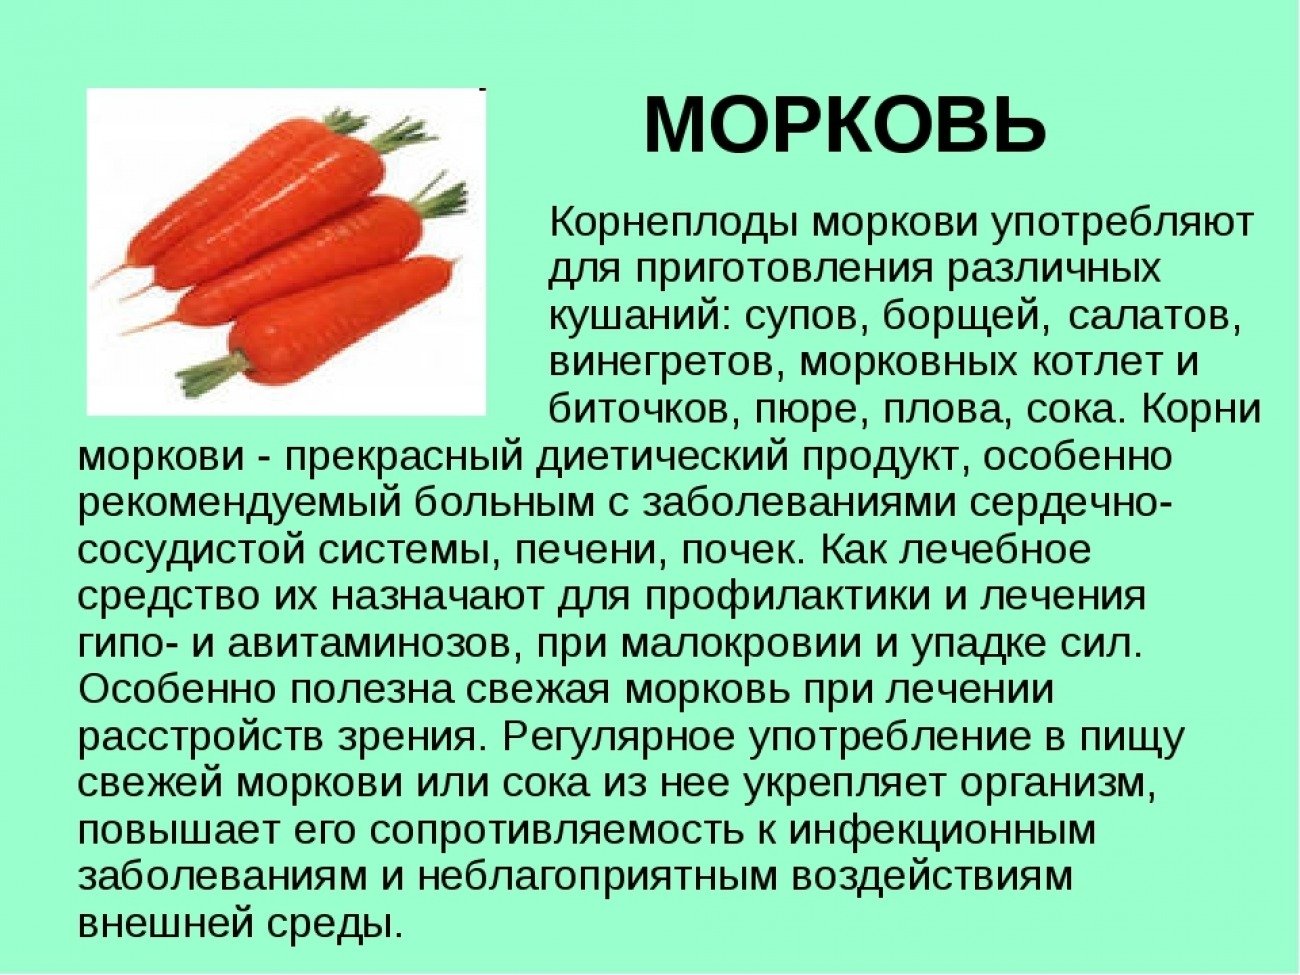 Любит ли морковь. Описание морковки. Доклад о морковке. Информация про морковь. Рассказать про морковь.